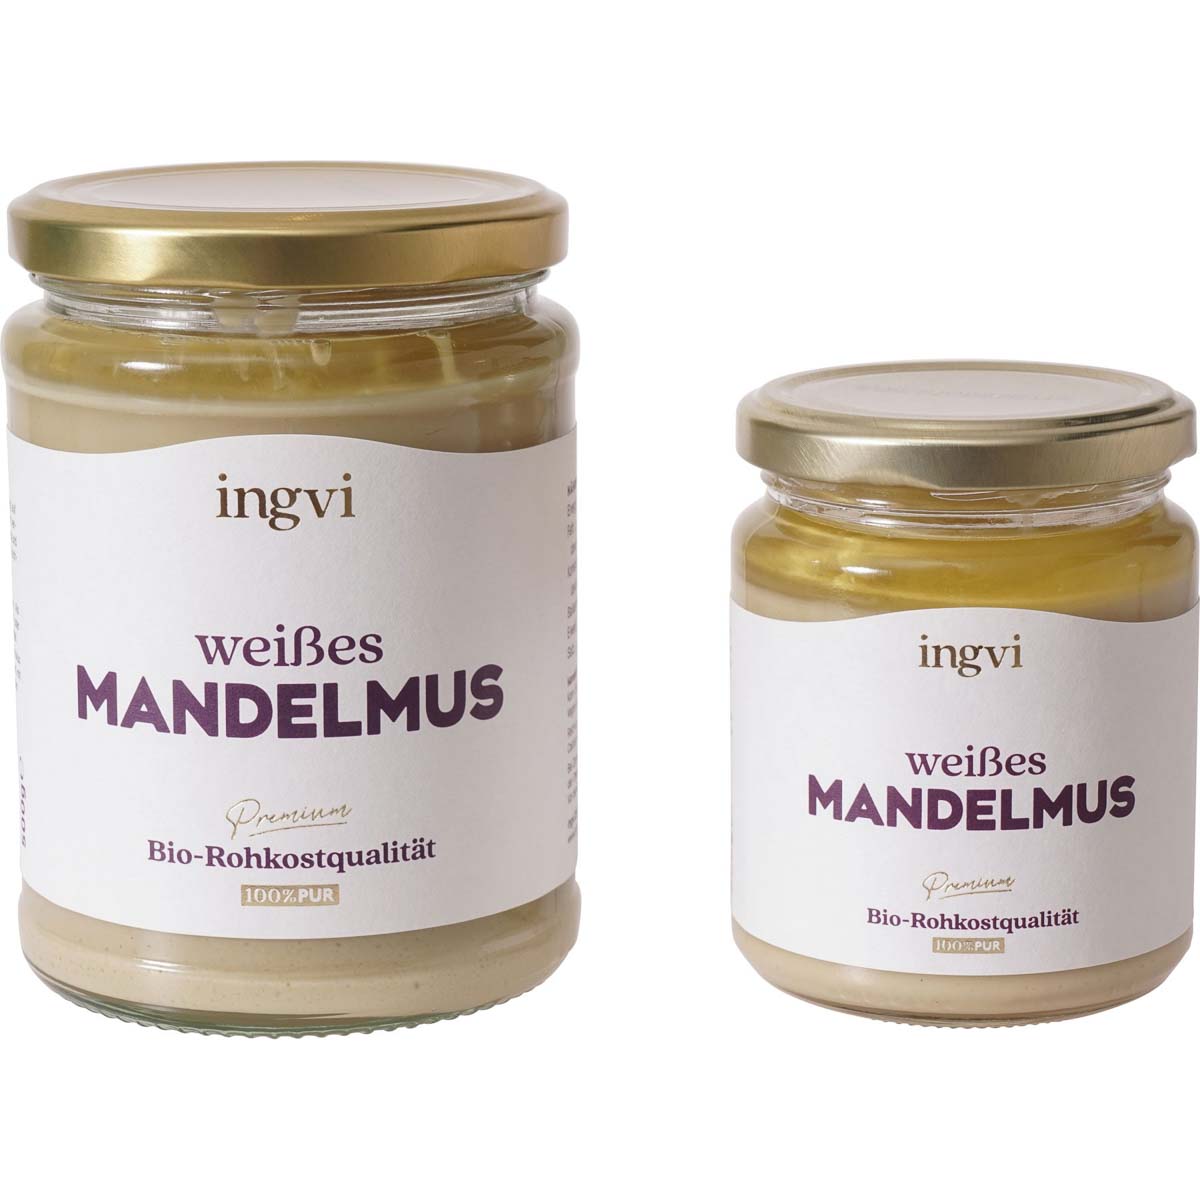 Mandelmus weiss Bio, roh, ingvi 250 g